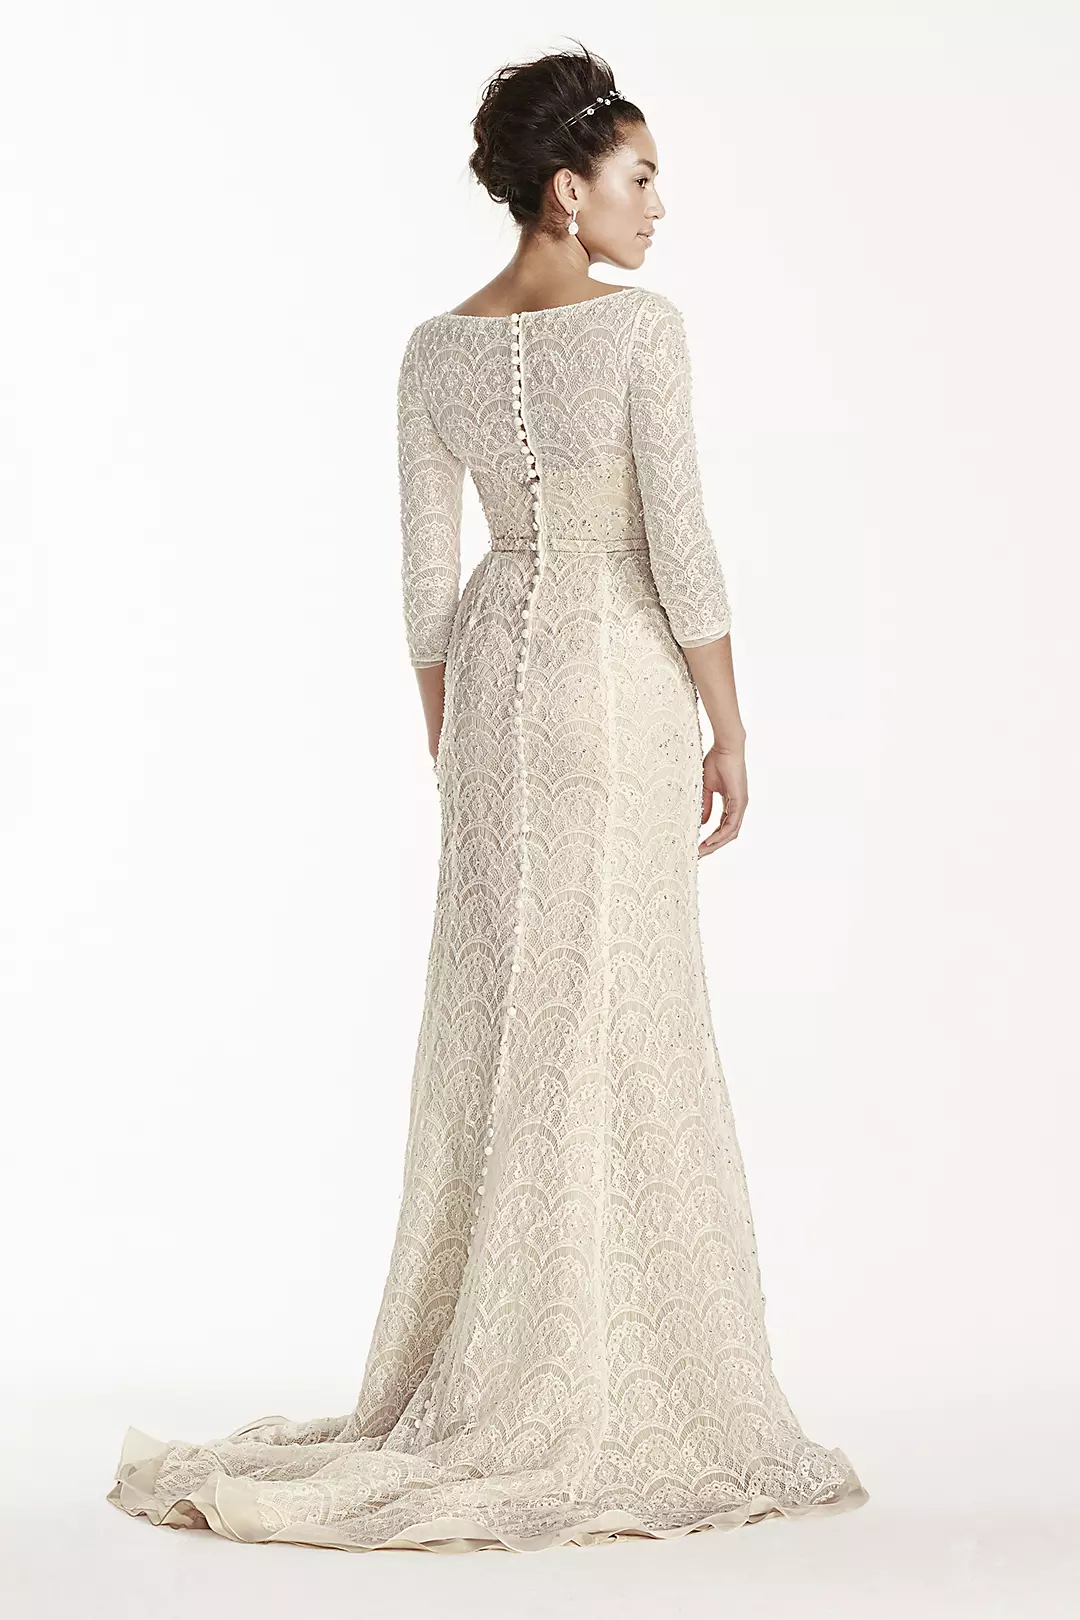 Oleg Cassini Beaded Lace 3/4 Sleeved Wedding Dress Image 2